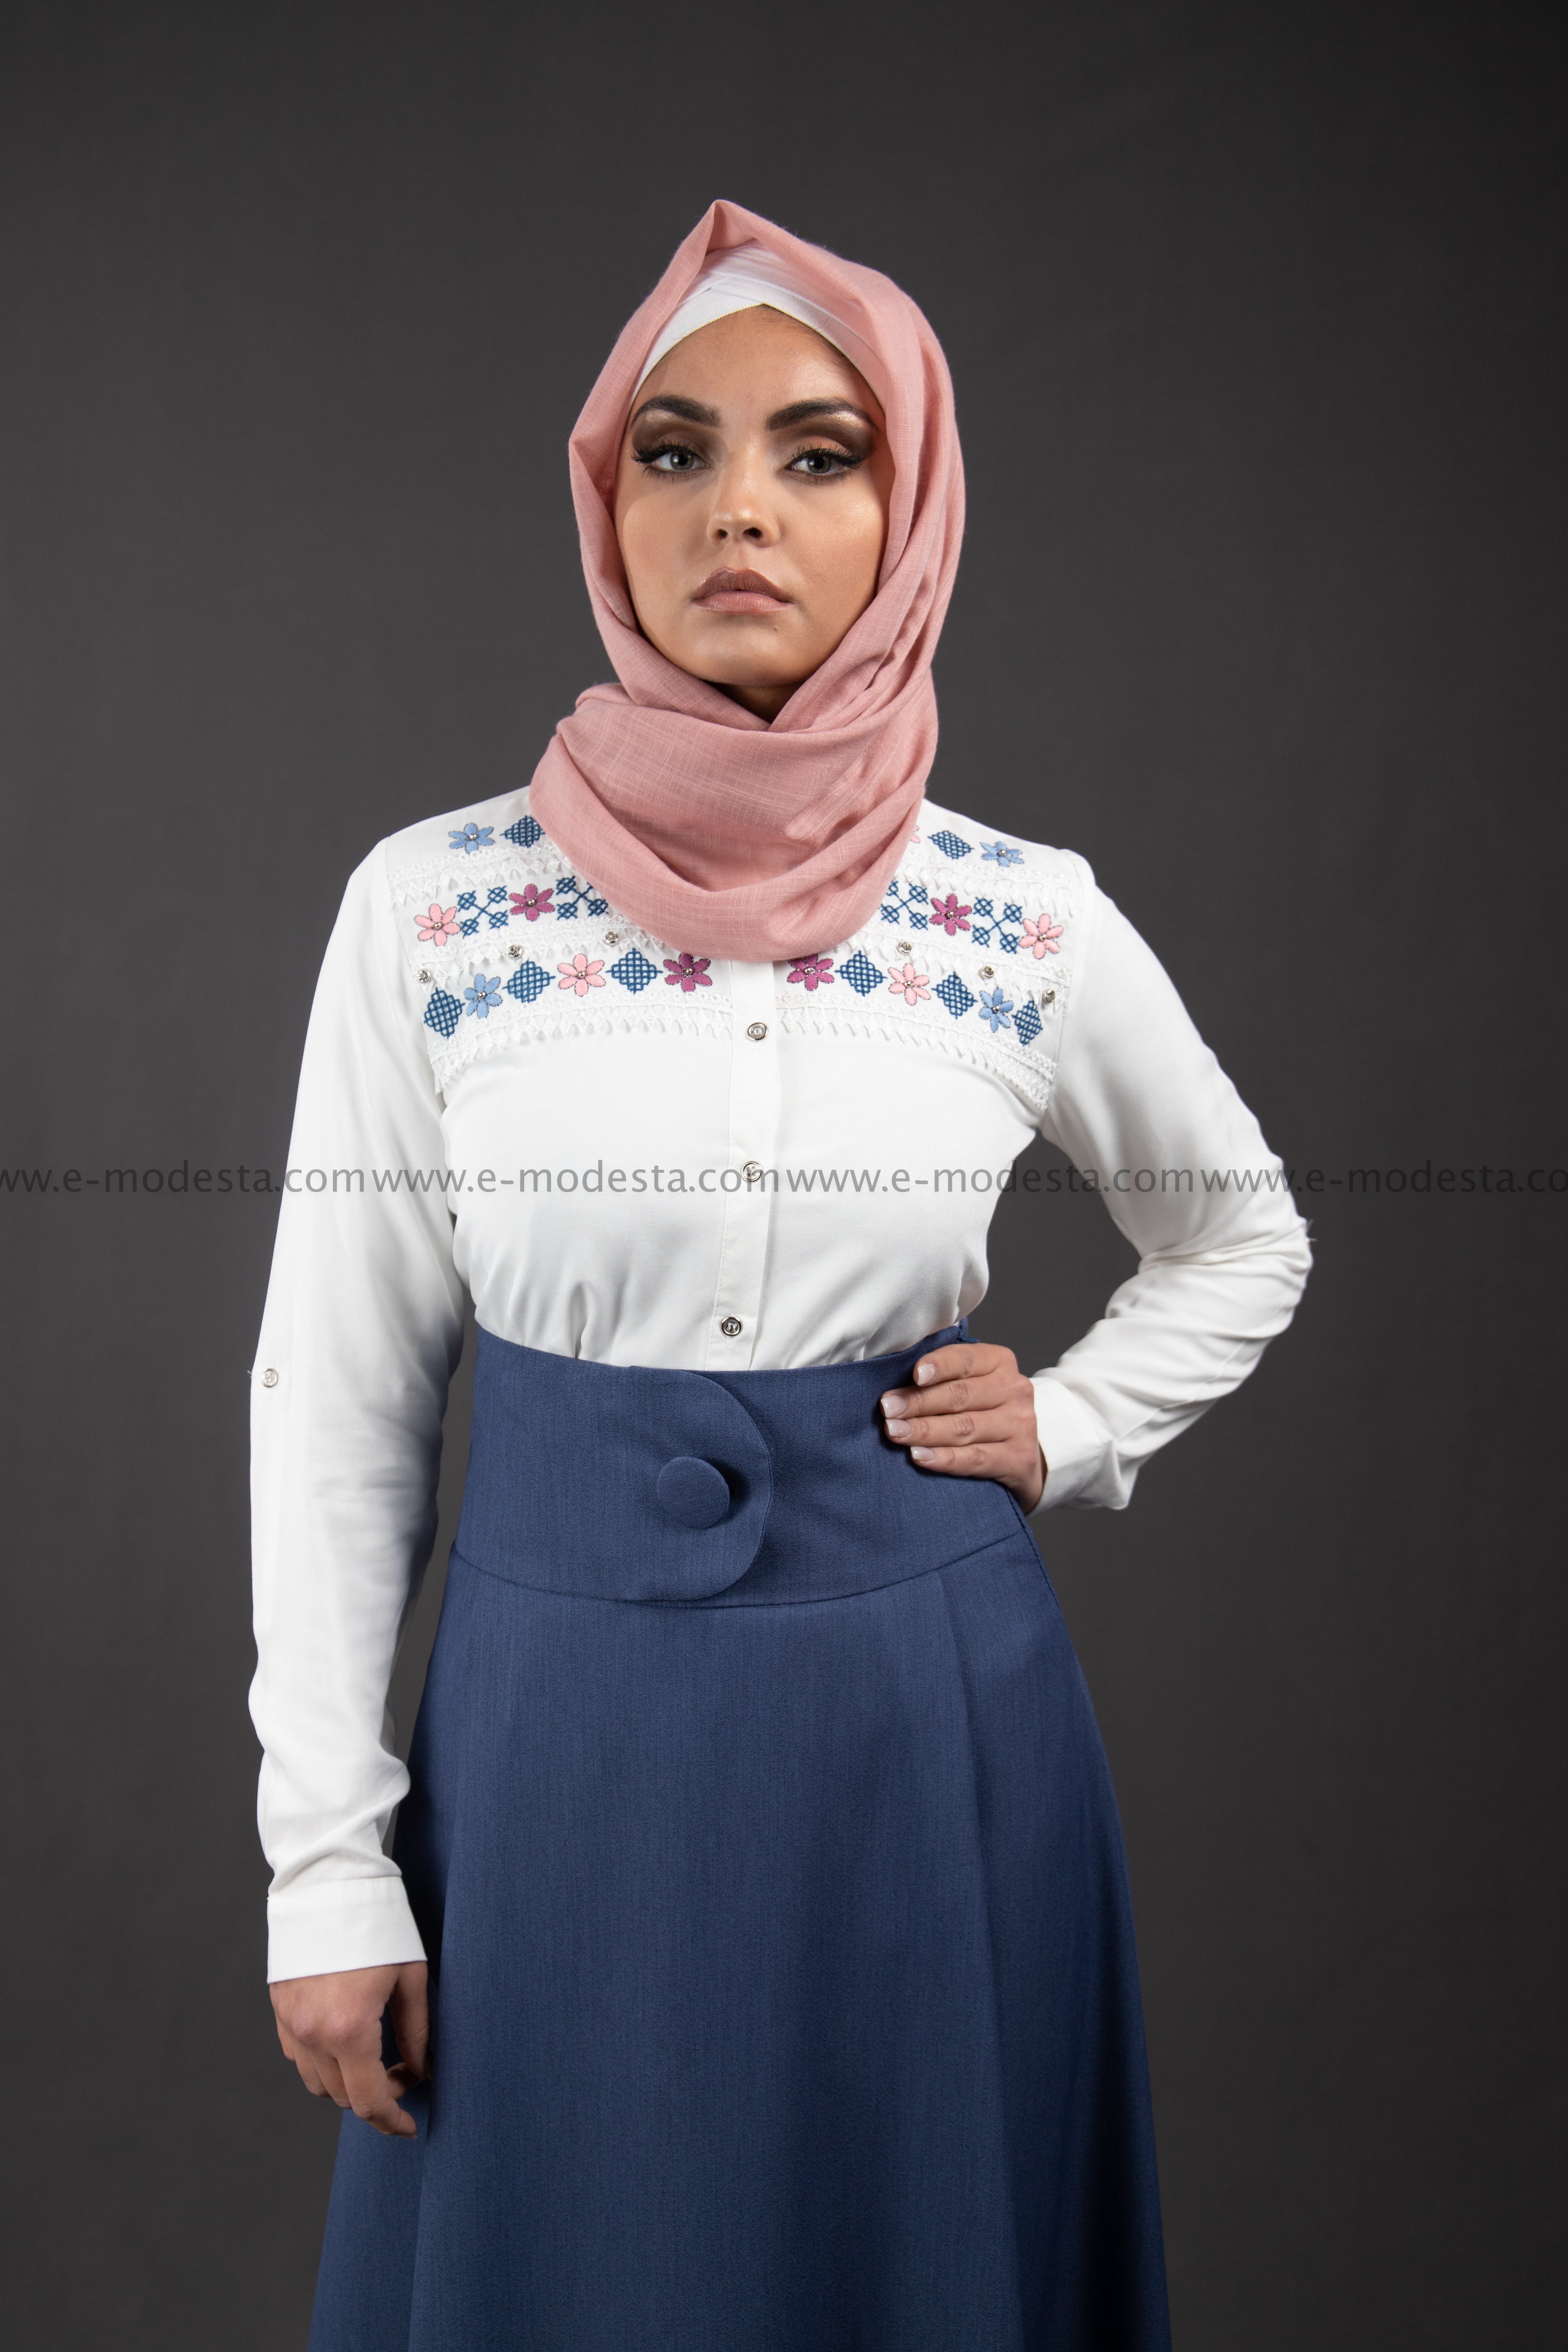 SALE High Waist Skirt | with Removable Shoulder Belt | Color Blue - E-Modesta